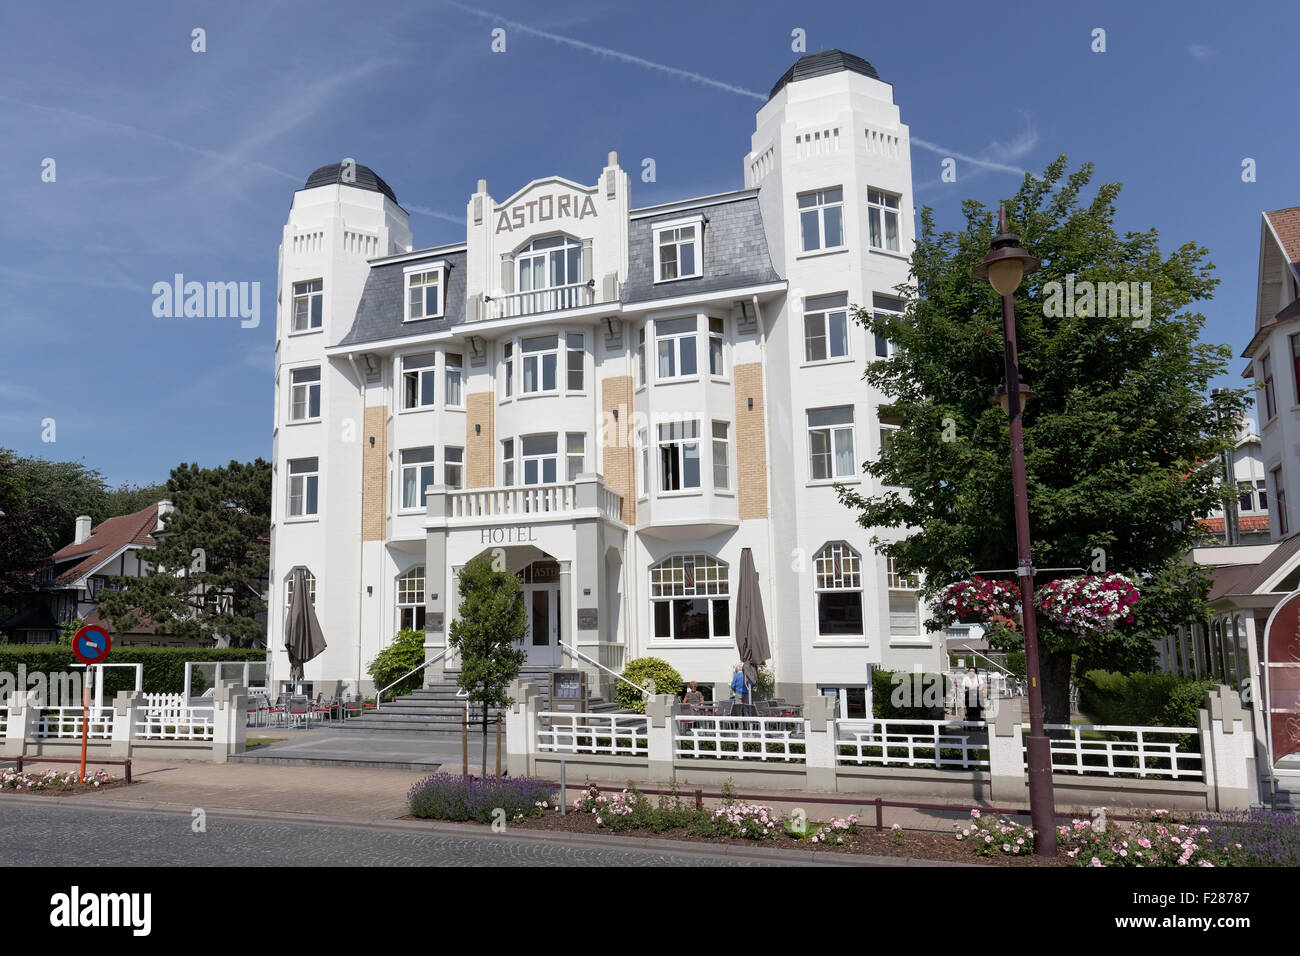 Hotel Astoria, bâtiments en style art nouveau, station balnéaire de De Haan, côte belge, Flandre occidentale, Belgique Banque D'Images